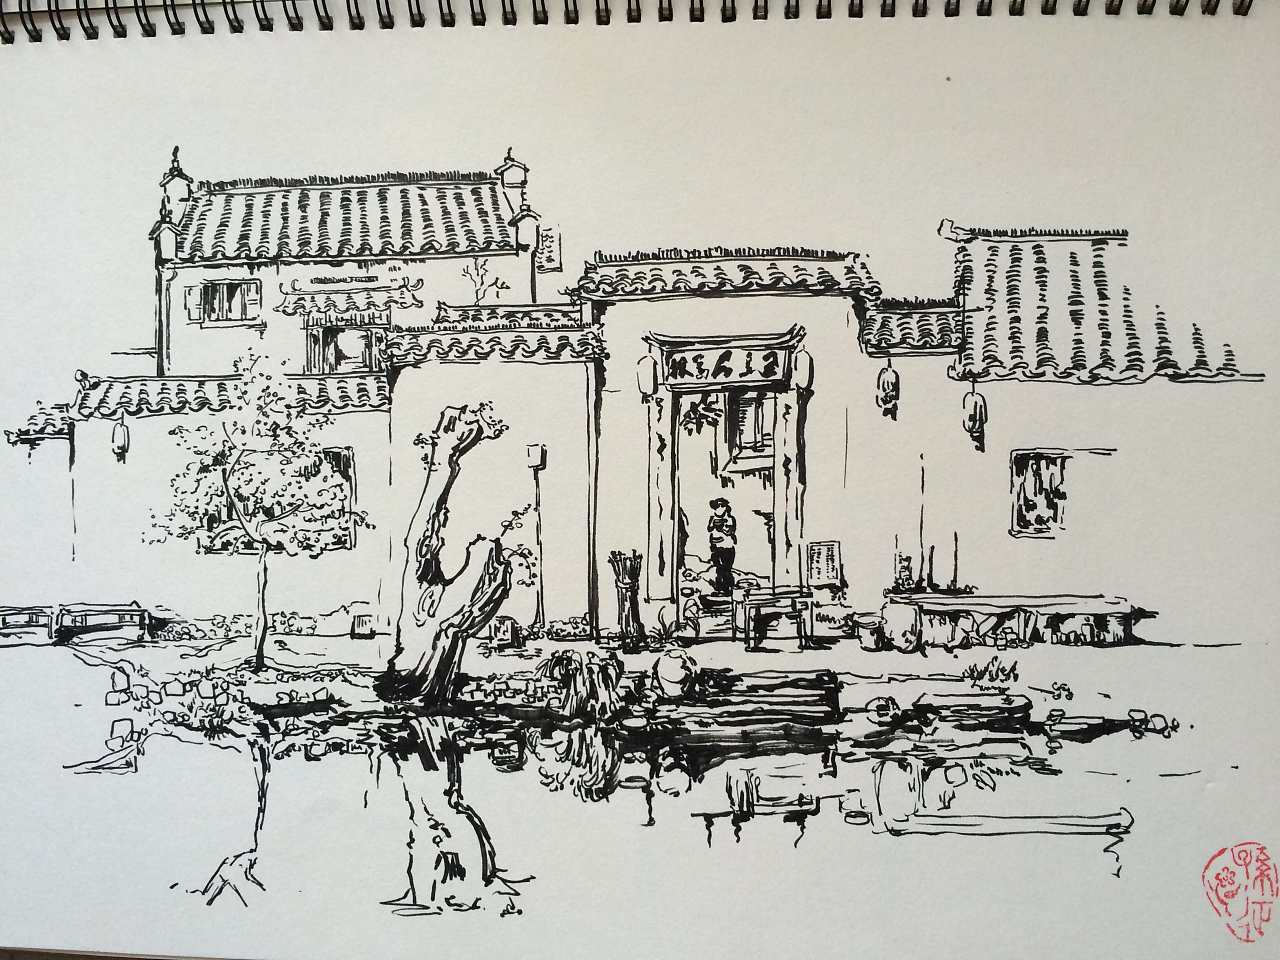 用的笔是秀丽笔 在安徽宏村水边作画,用黑白两色体现悠久建筑的古老